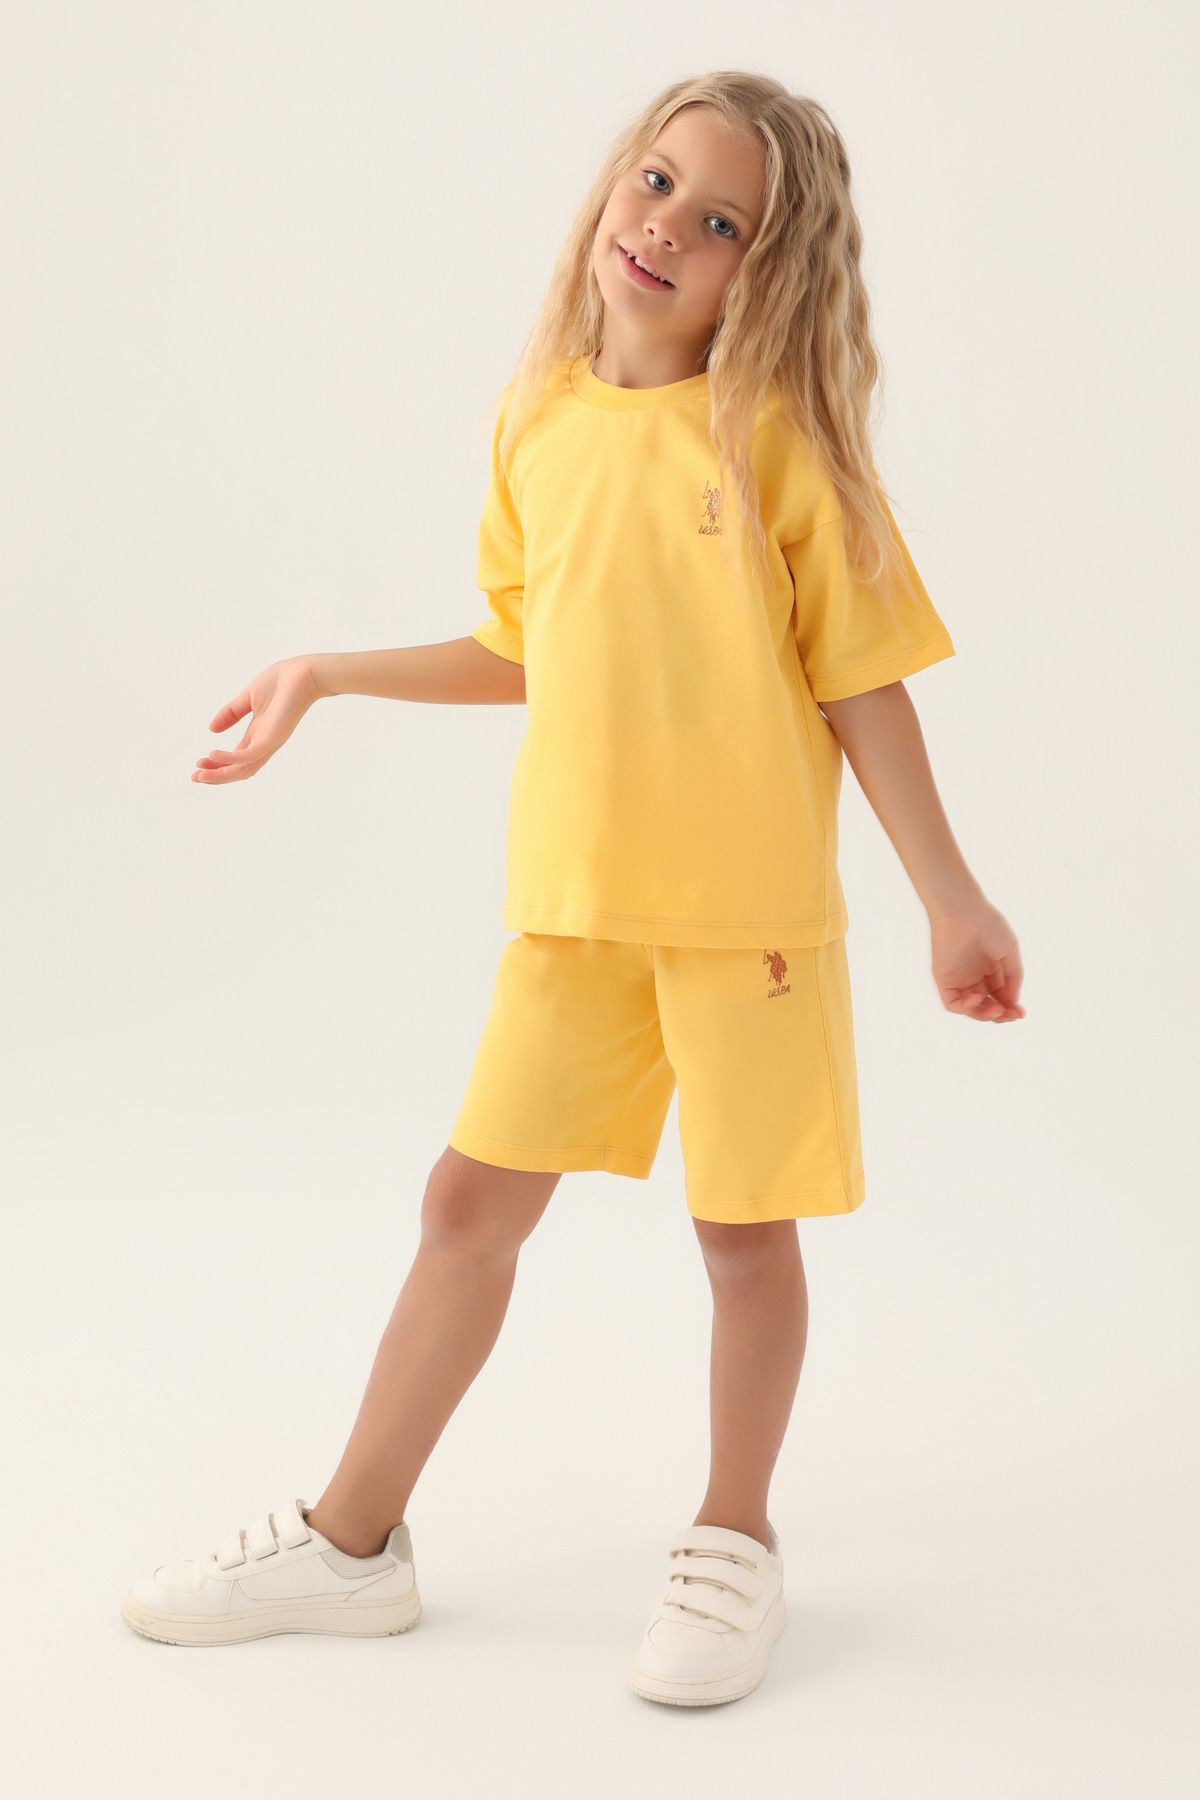 Костюм повседневный детский U.S. POLO Assn. US1822-V1, желтый, 158 костюм повседневный детский u s polo assn us1822 v1 розовая пудра 122